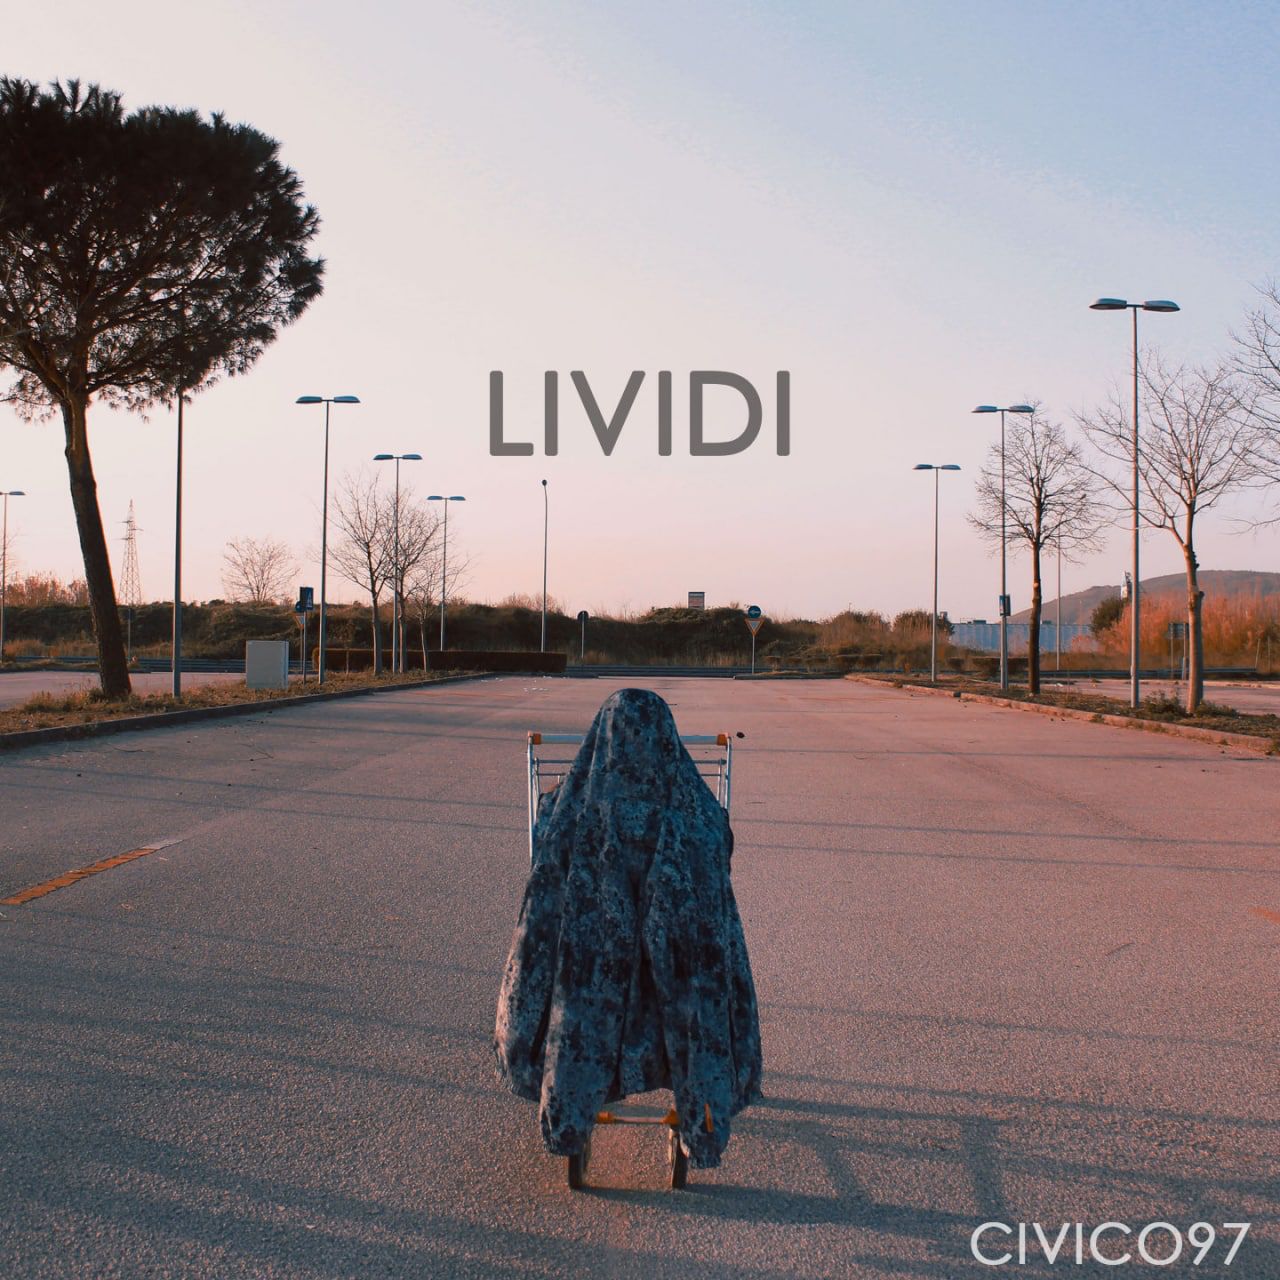 I Civico97, pubblicano il nuovo singolo “Lividi”